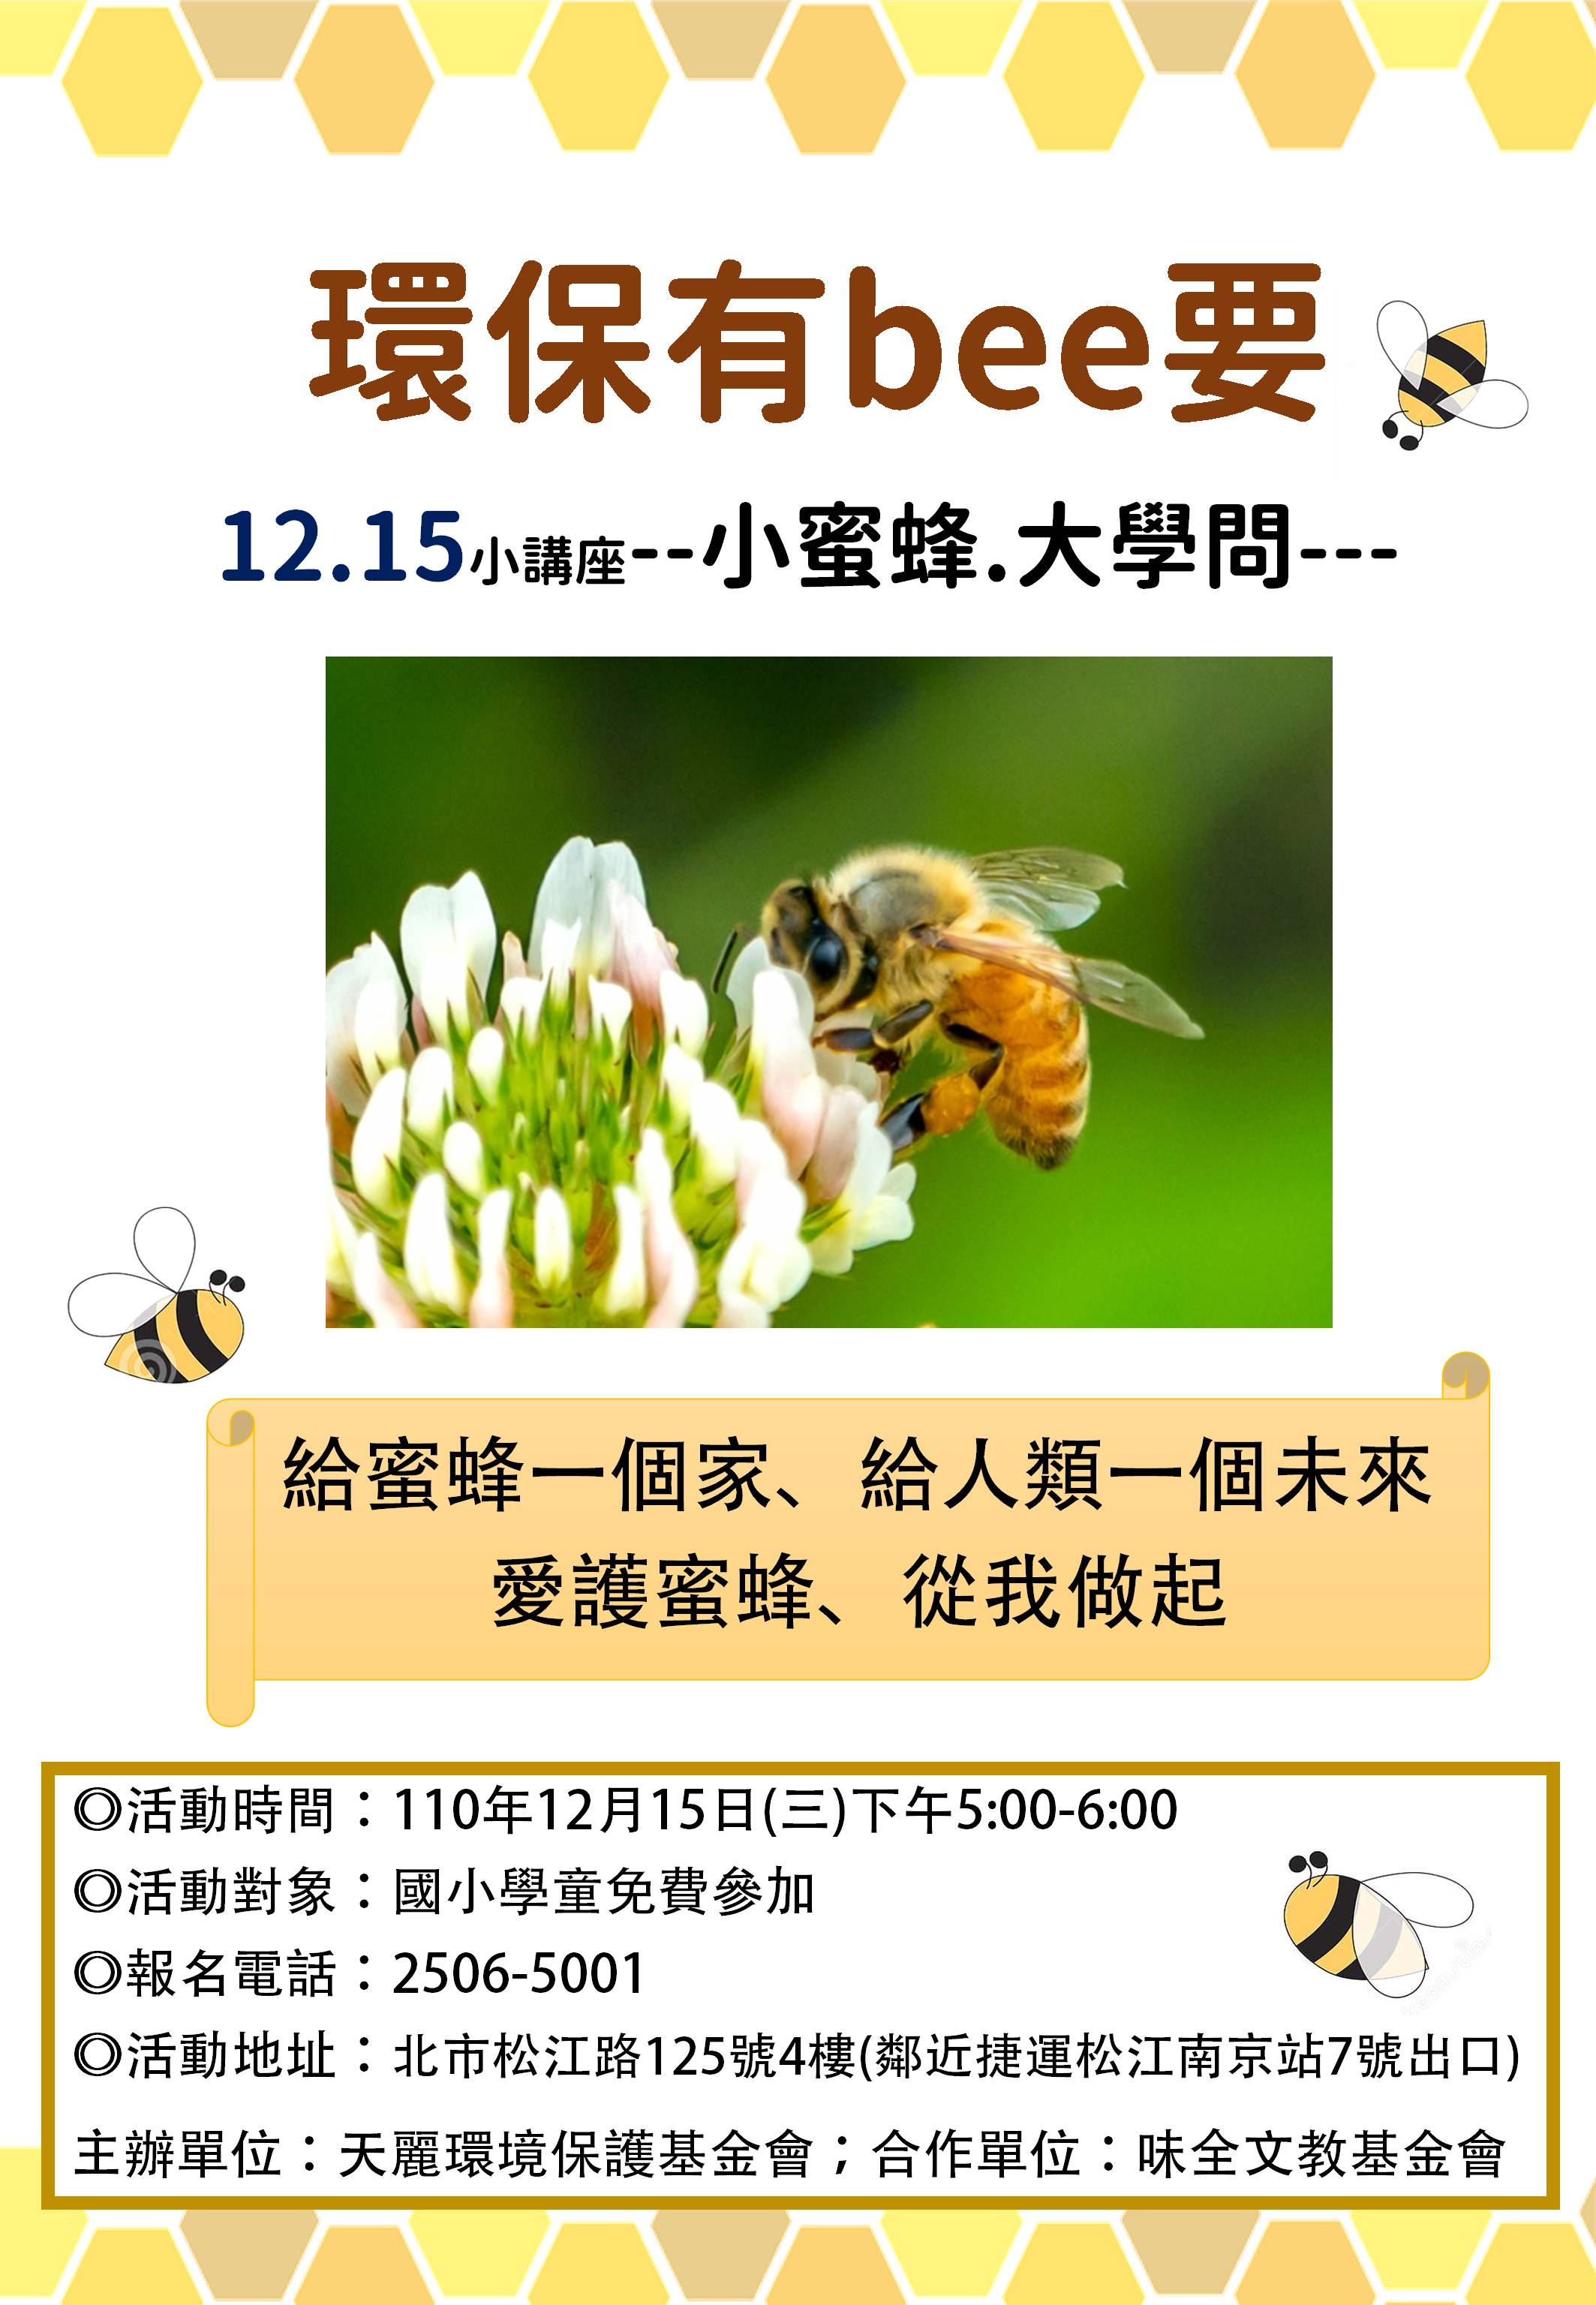 『環保有bee要』 海報